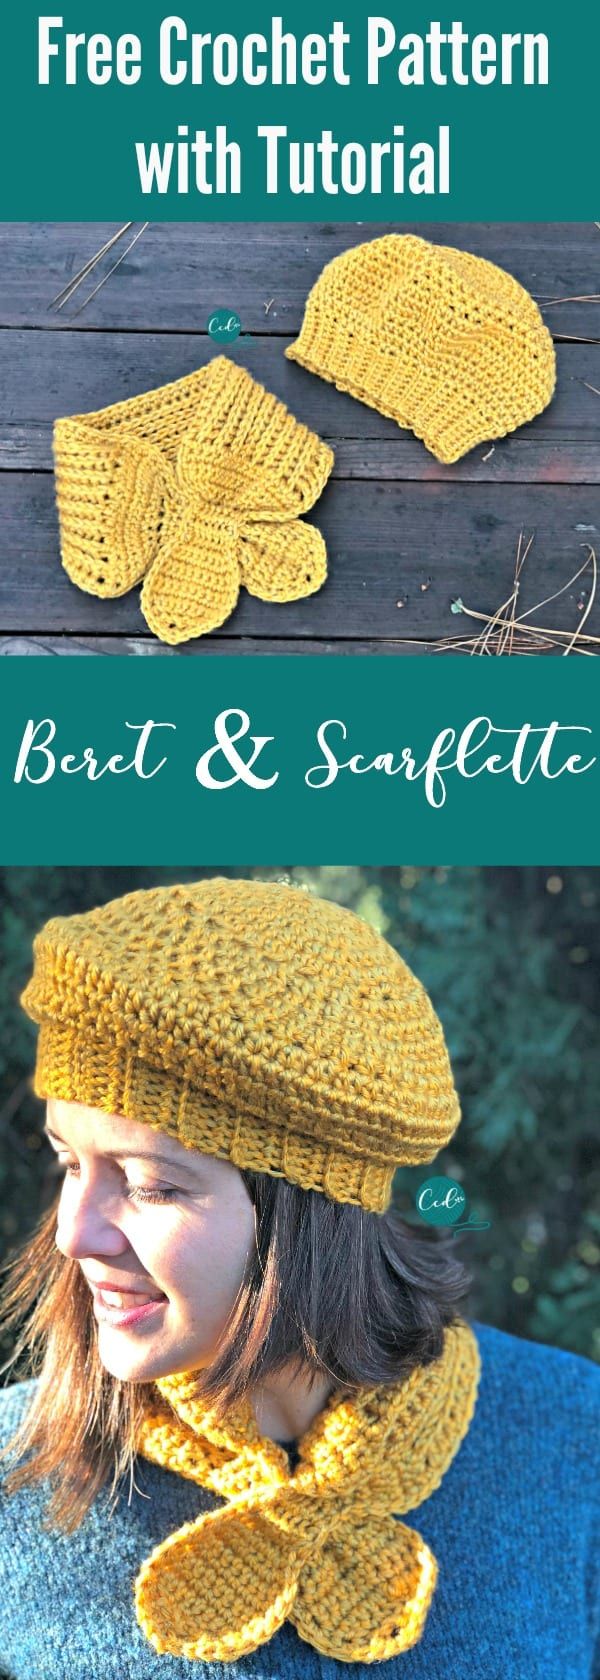 Crochet-Beret-and-Scarflette-Set-Free-Pattern.jpg